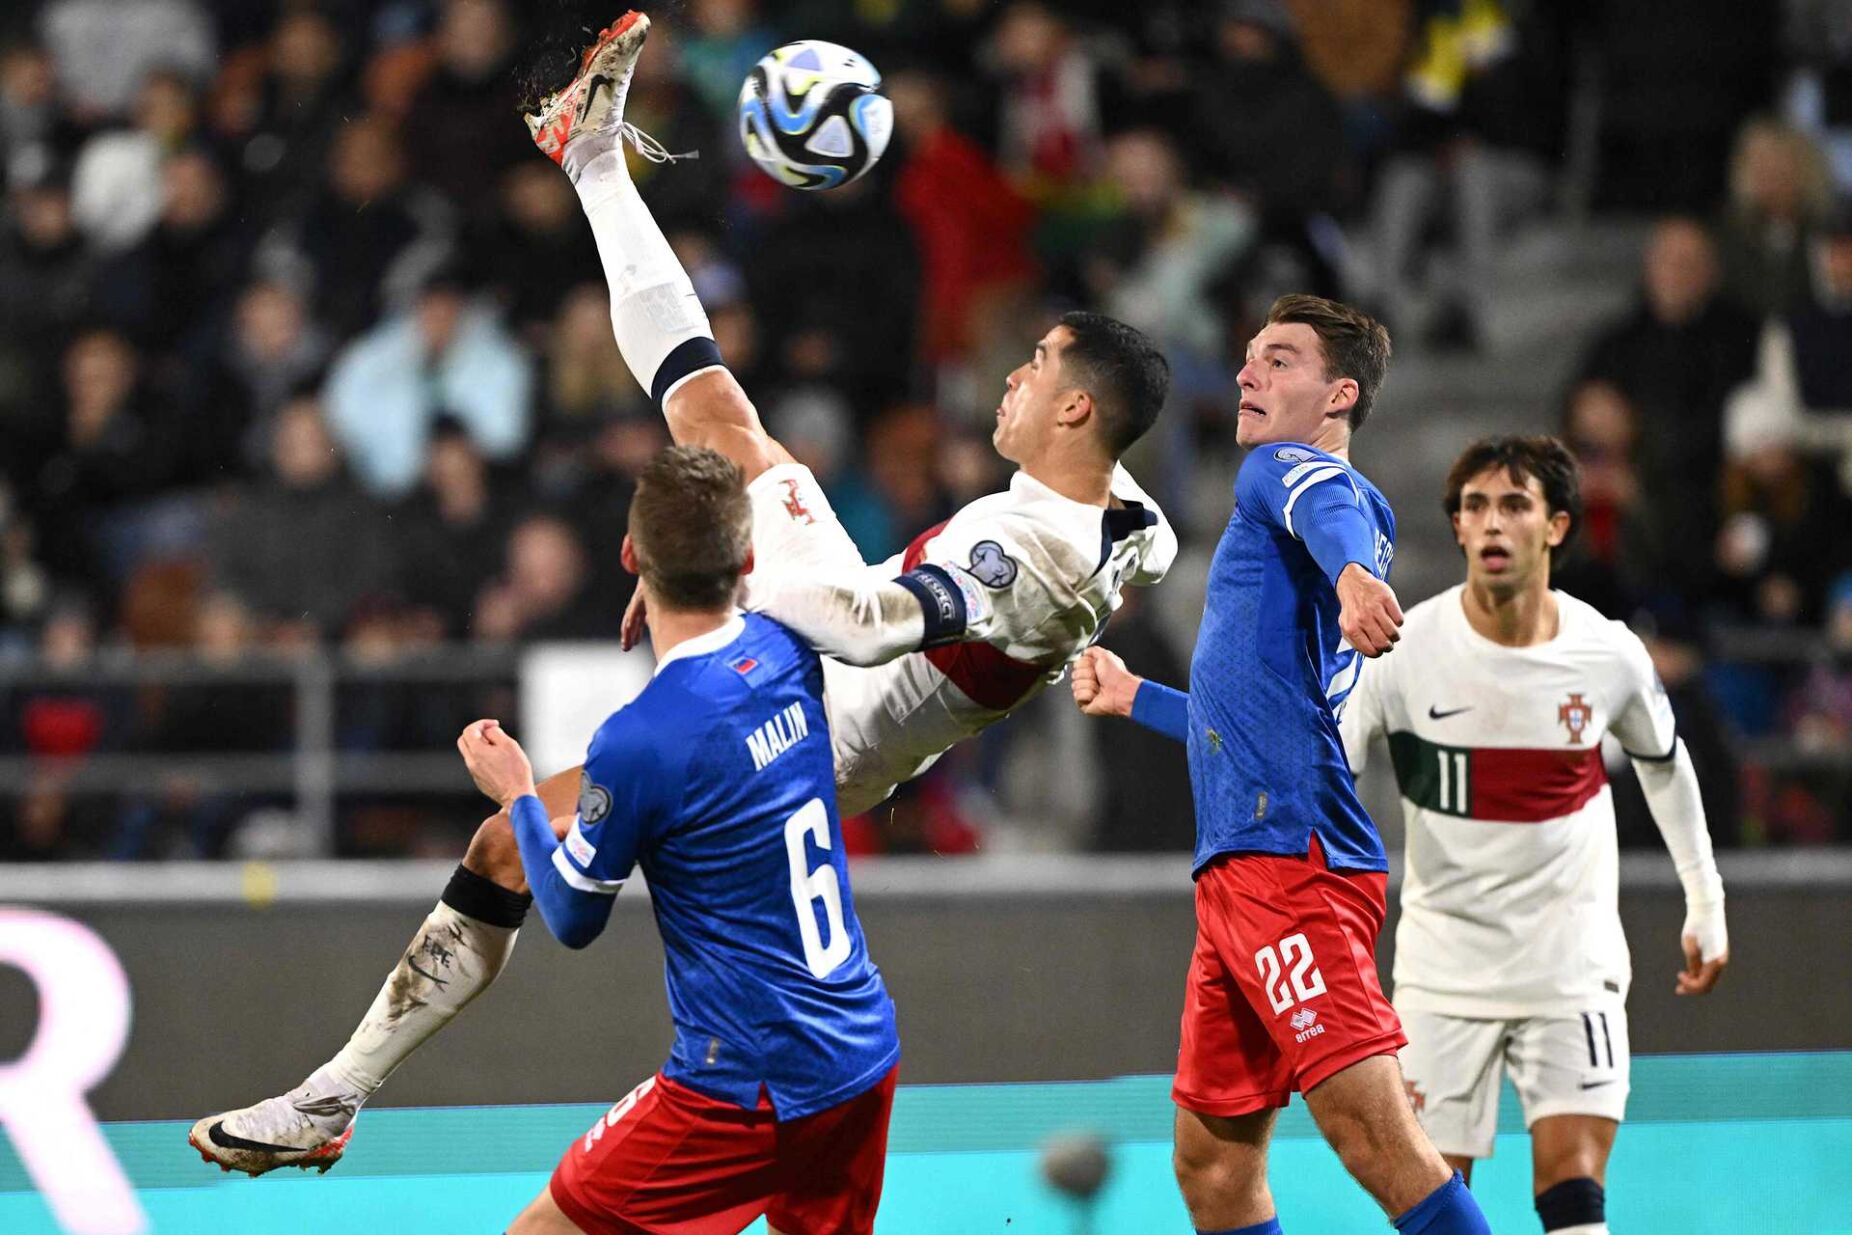 Portugal inicia qualificação para o Euro2024 com o Liechtenstein em Alvalade